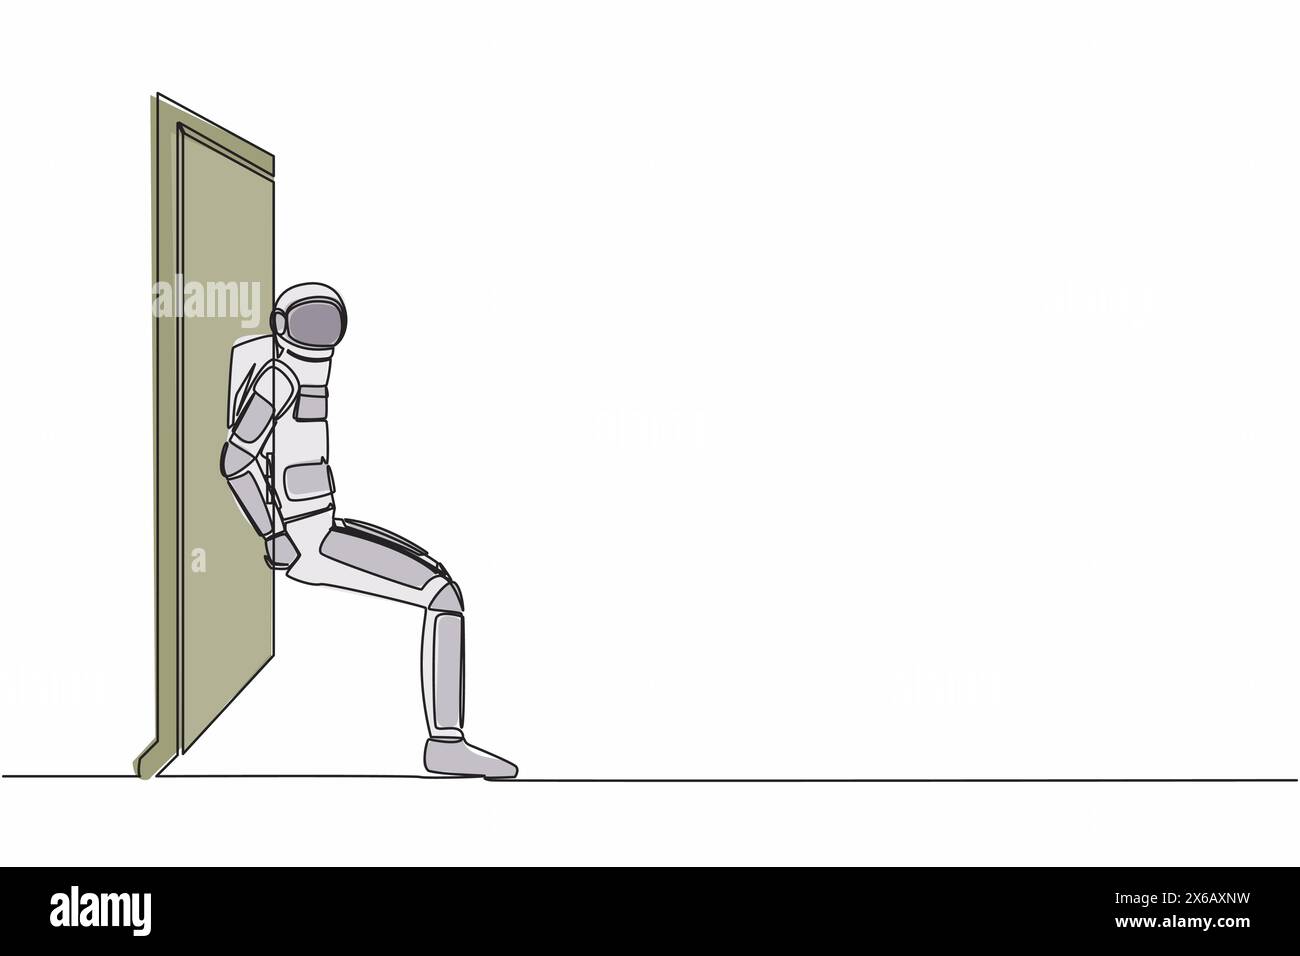 Durchgehende Zeichnung eines jungen Astronauten, der mit dem Rücken die Tür schiebt. Raumfahrer überwindet Hindernisse bei einer Raumschiffexpedition. Cosmonaut äusserer Spac Stock Vektor